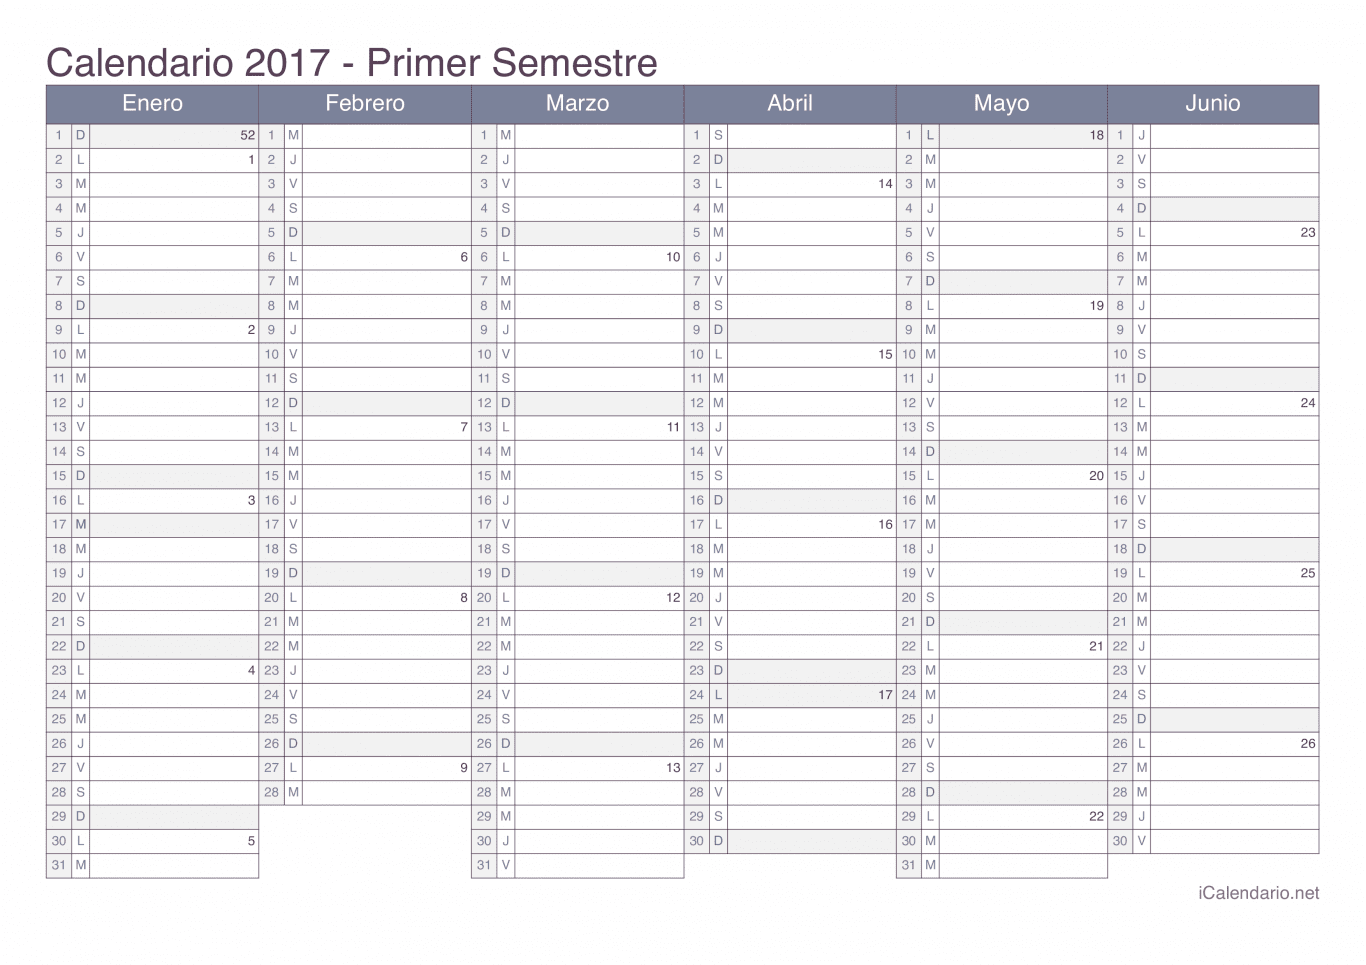 Calendario por semestre com números da semana 2017 - Office